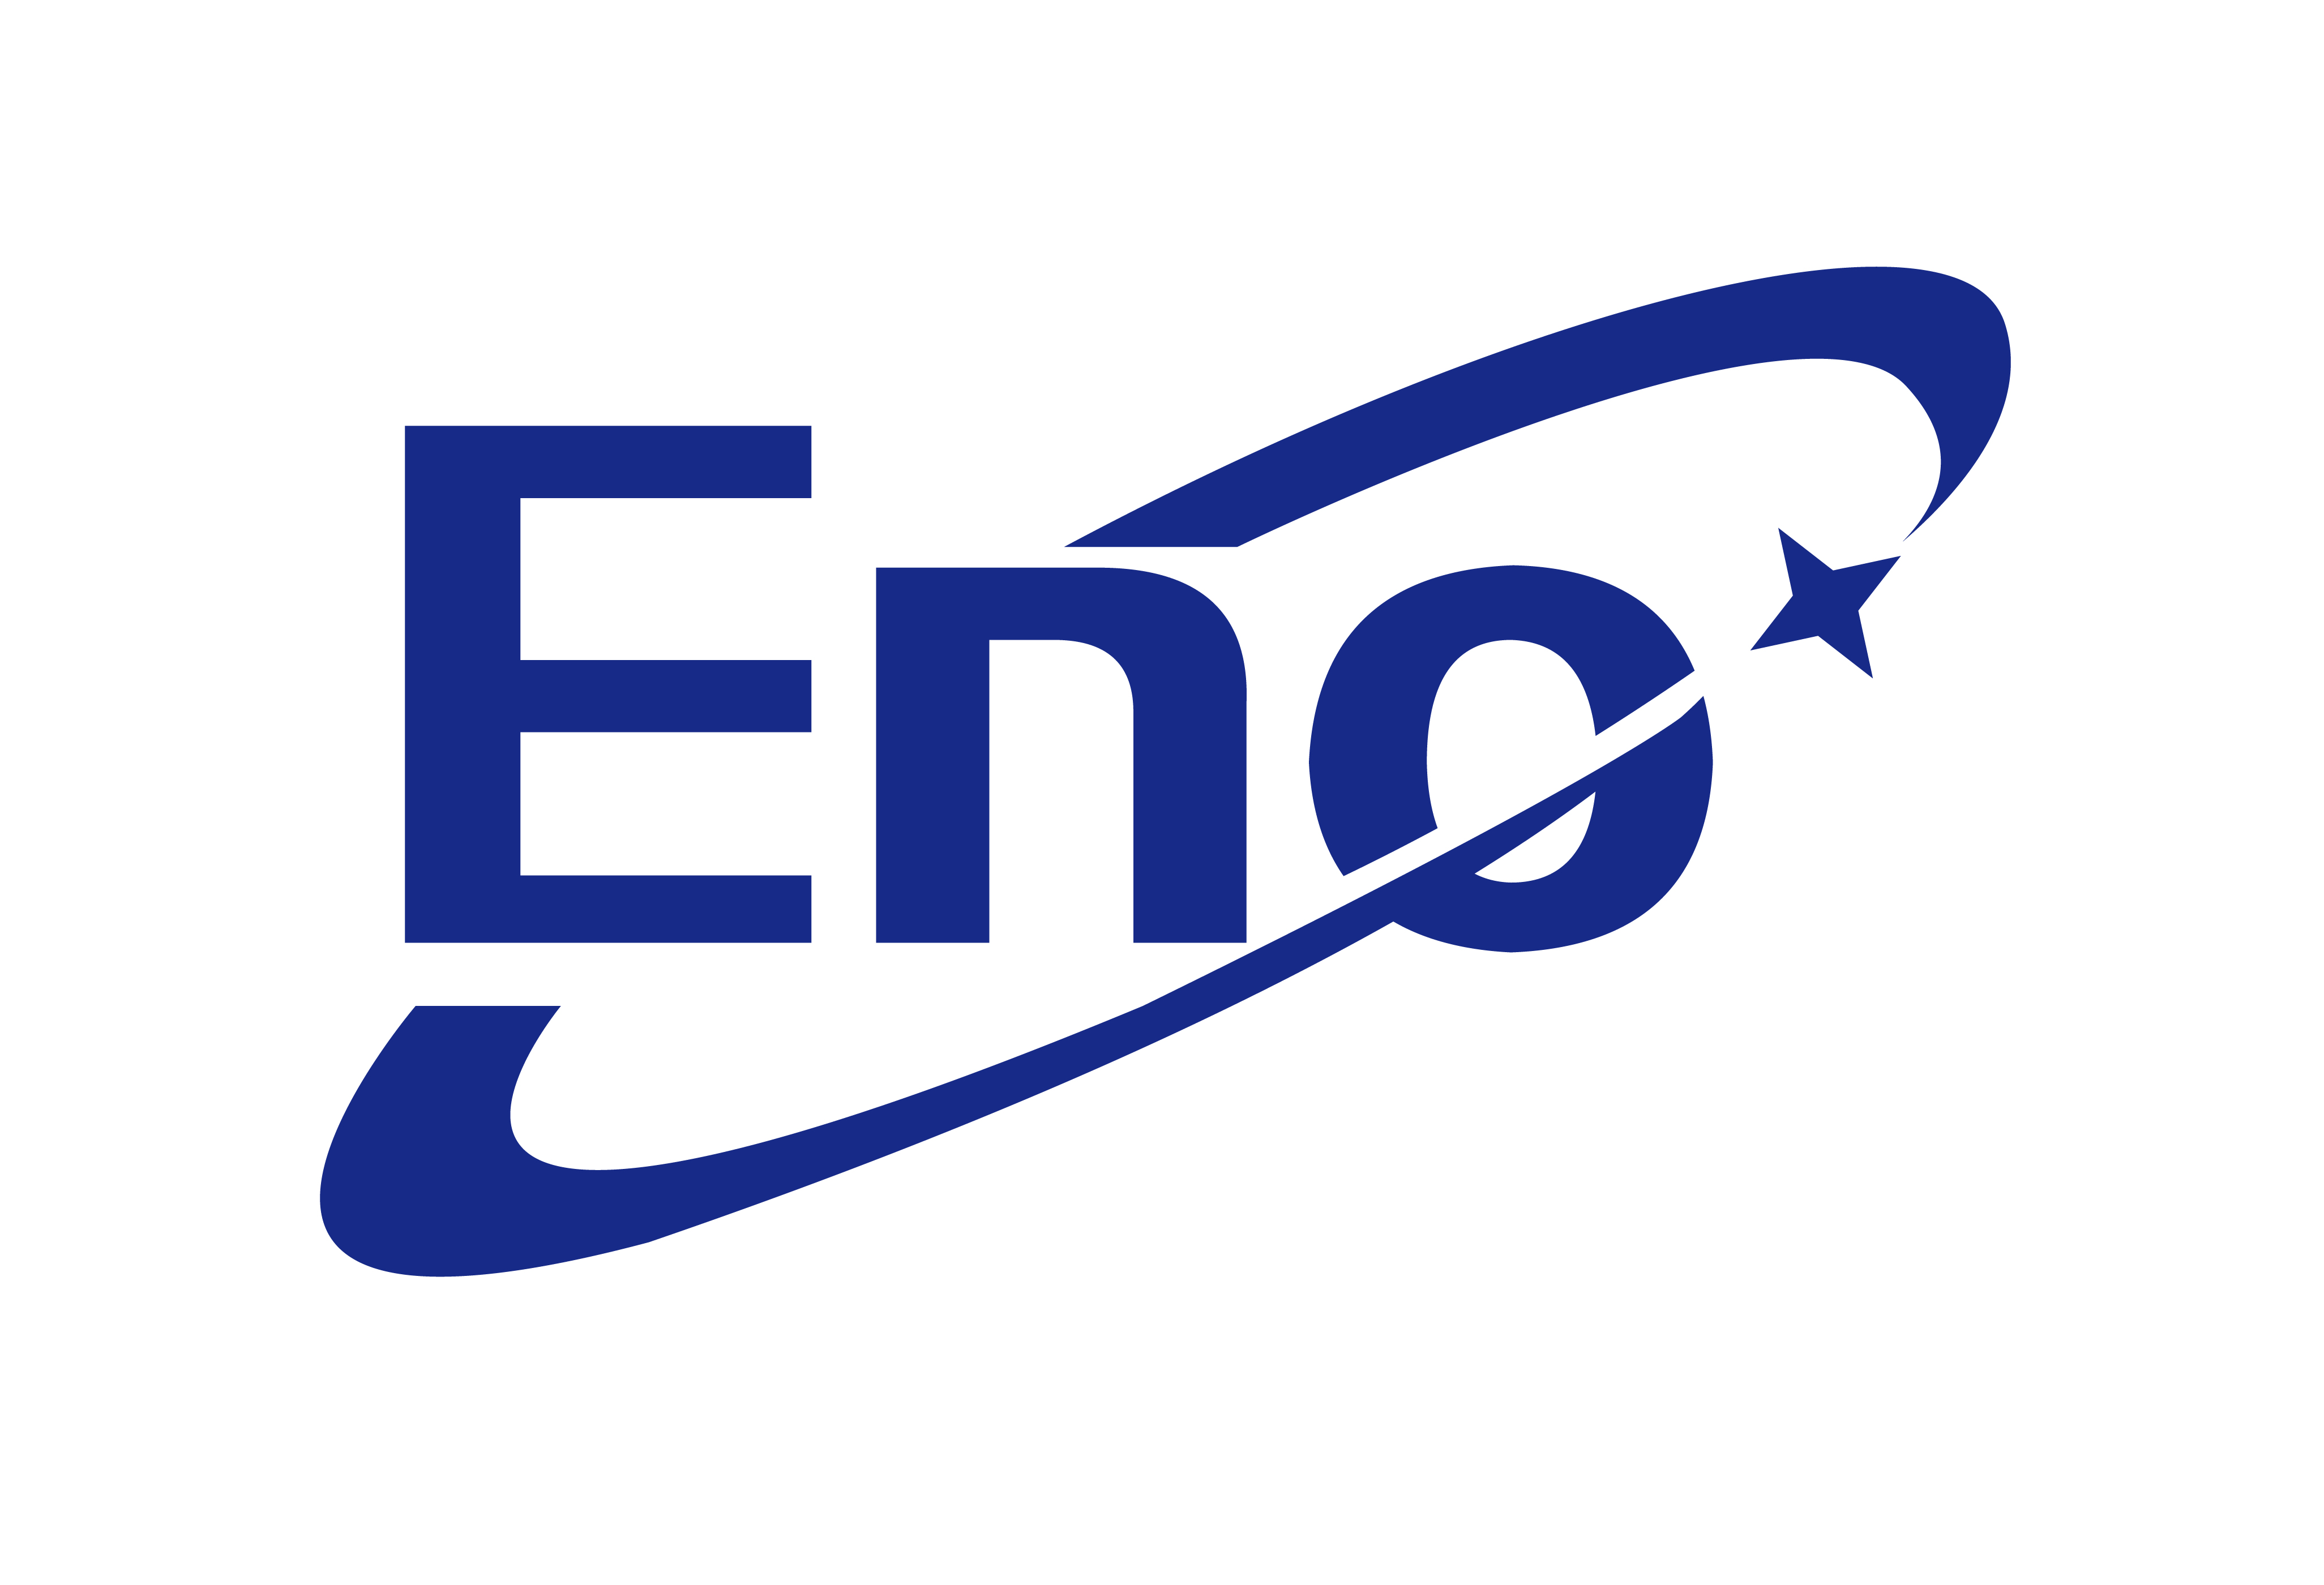 跨境电商 logo图片